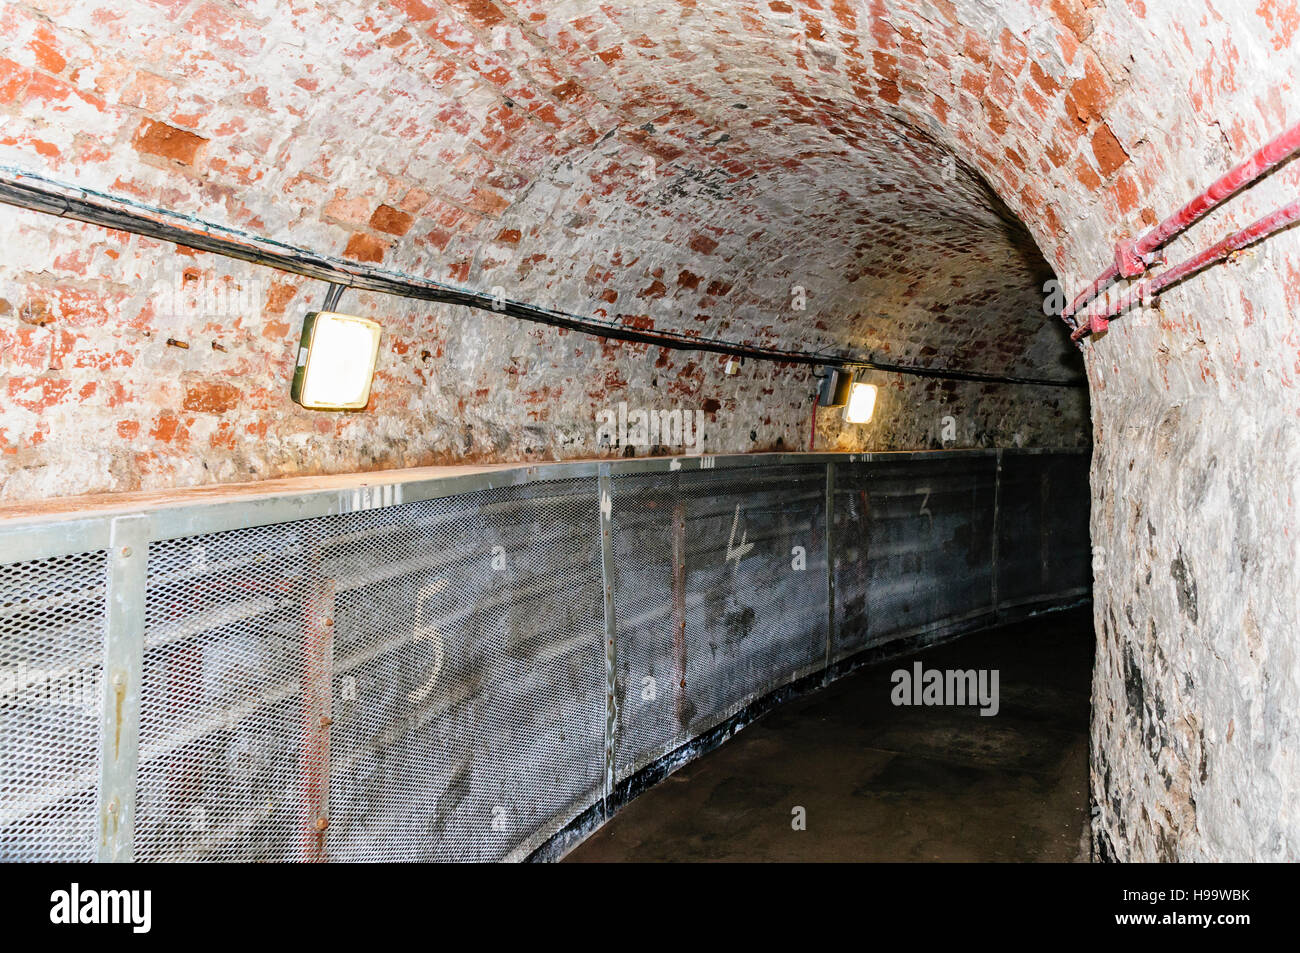 U-Bahn Tunnel zwischen Crumlin Road Courthouse, Gefängnis und Crumlin Road, Belfast, Nordirland. Dieser Tunnel wurde verwendet, um Untersuchungshäftlinge zu Transfer für ihre Anhörung vor Gericht und wurde oft die Lage für Kämpfe und Angriffe zwischen rivalisierenden Gefangenen. Stockfoto